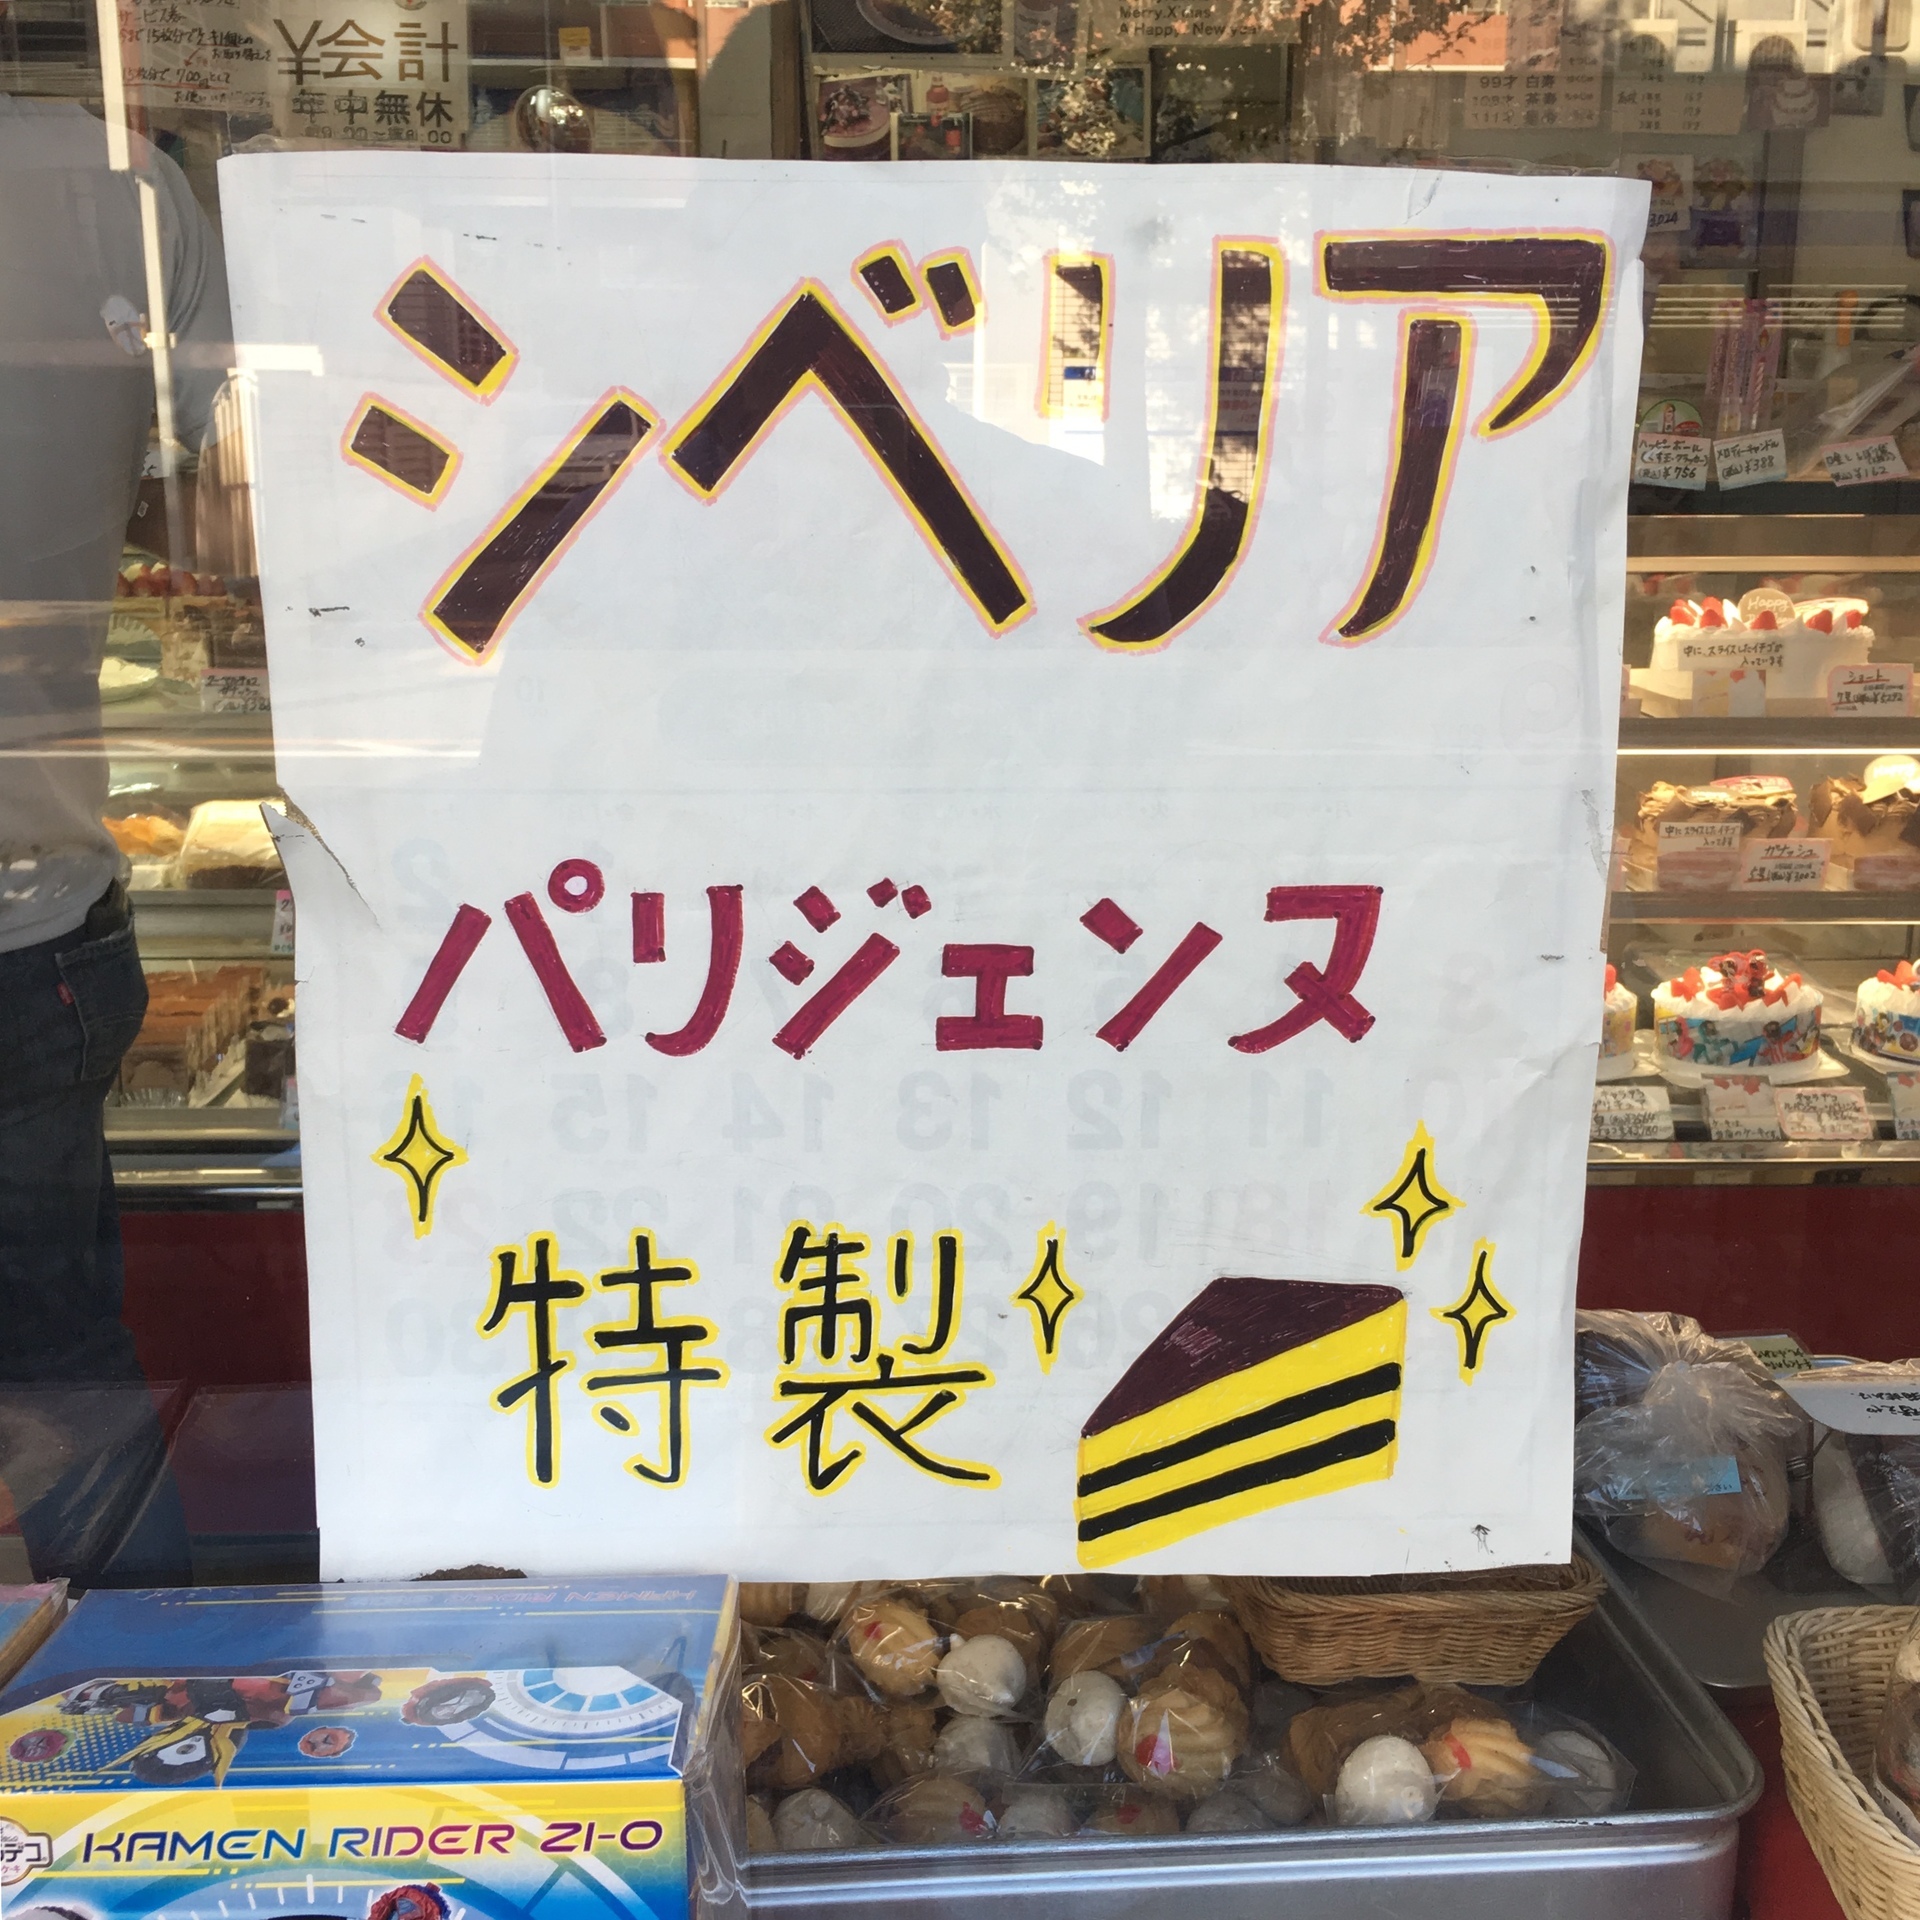 武蔵境の洋菓子店 パリジェンヌ くらしの編集舎